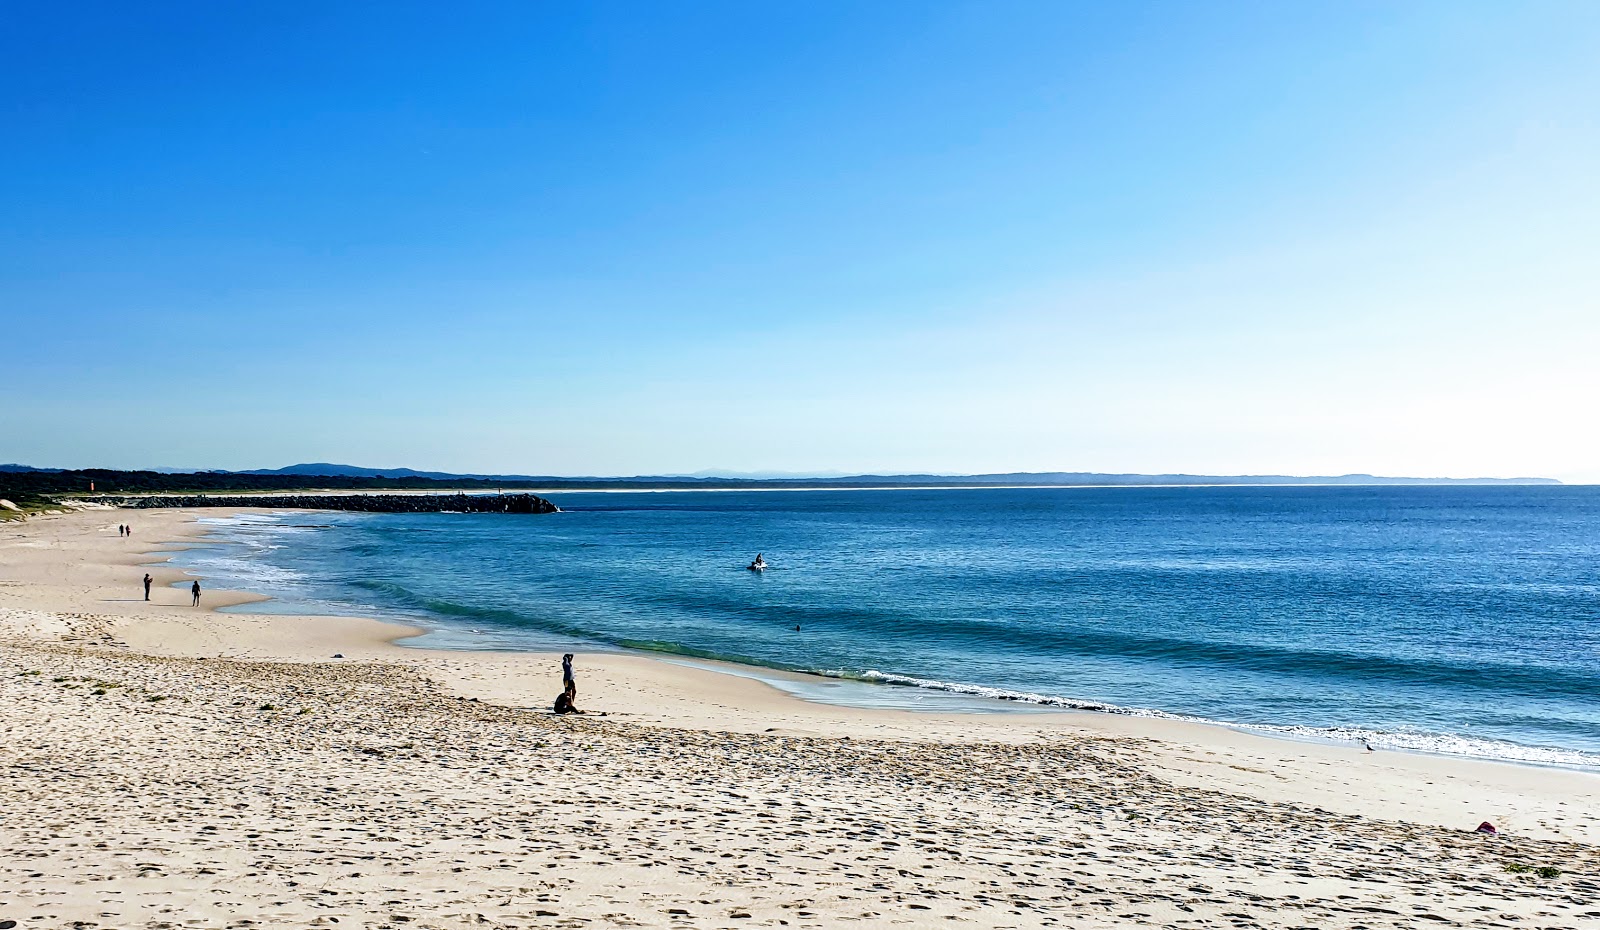 Forster Beach'in fotoğrafı geniş plaj ile birlikte